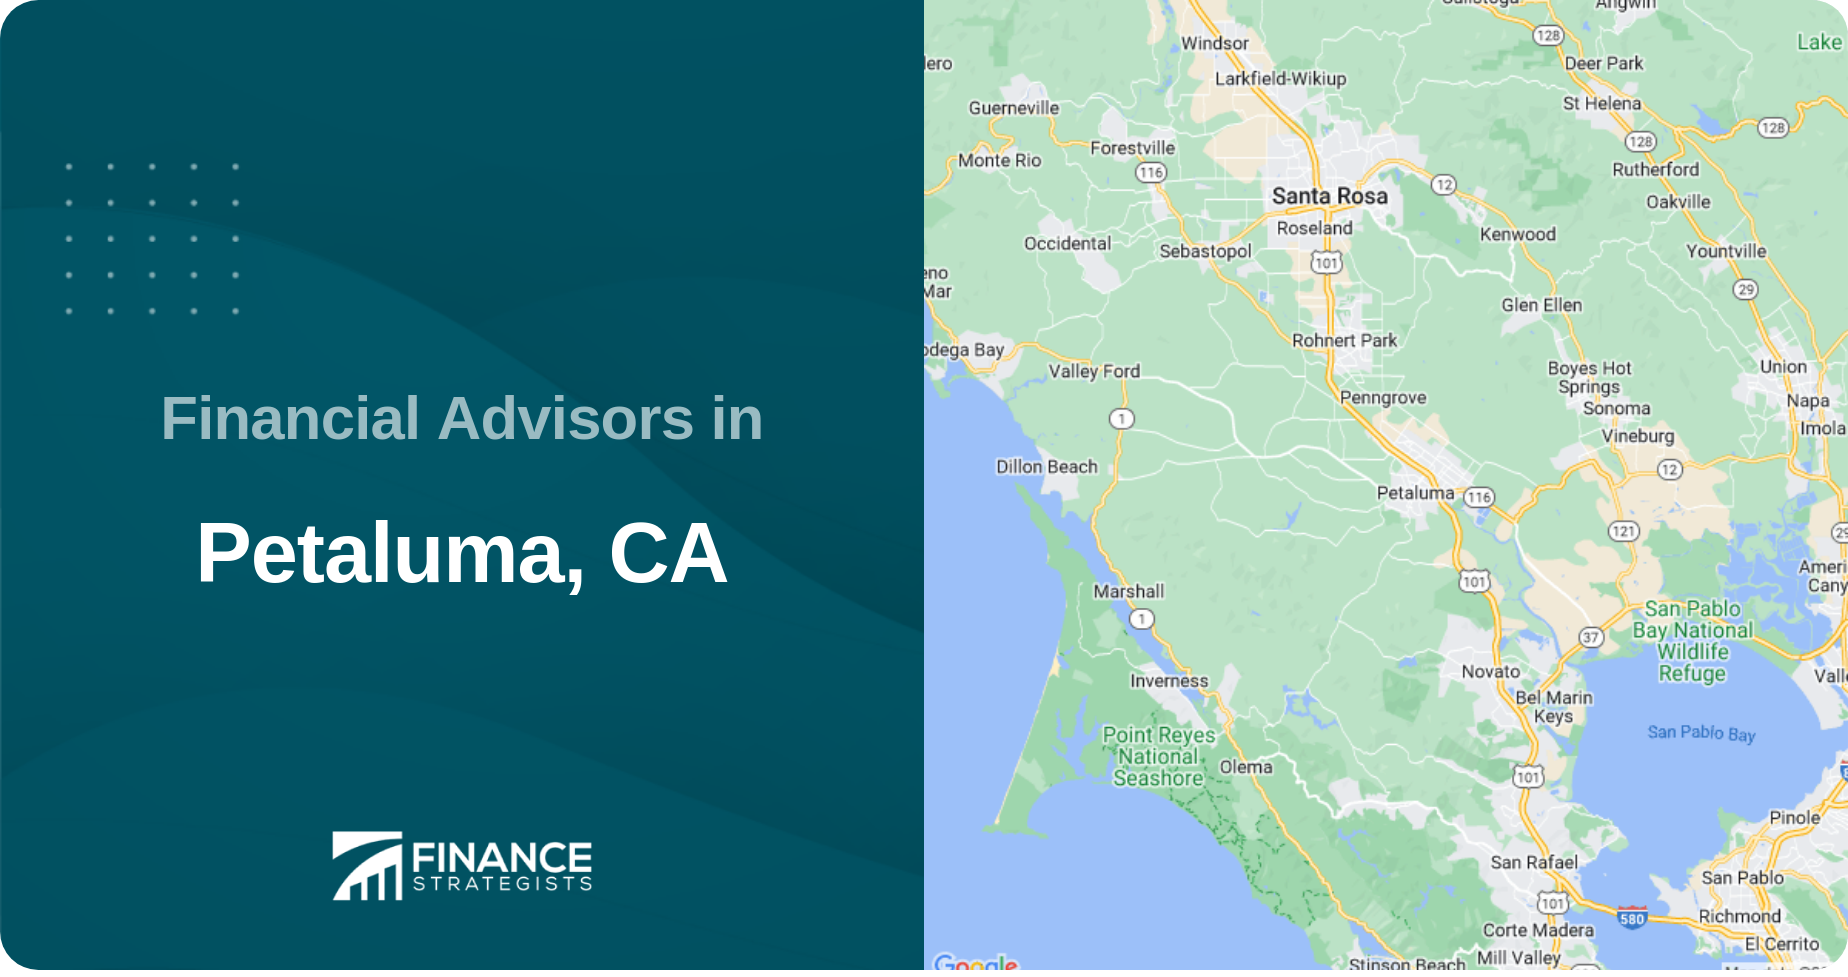 Financial Advisors in Petaluma, CA